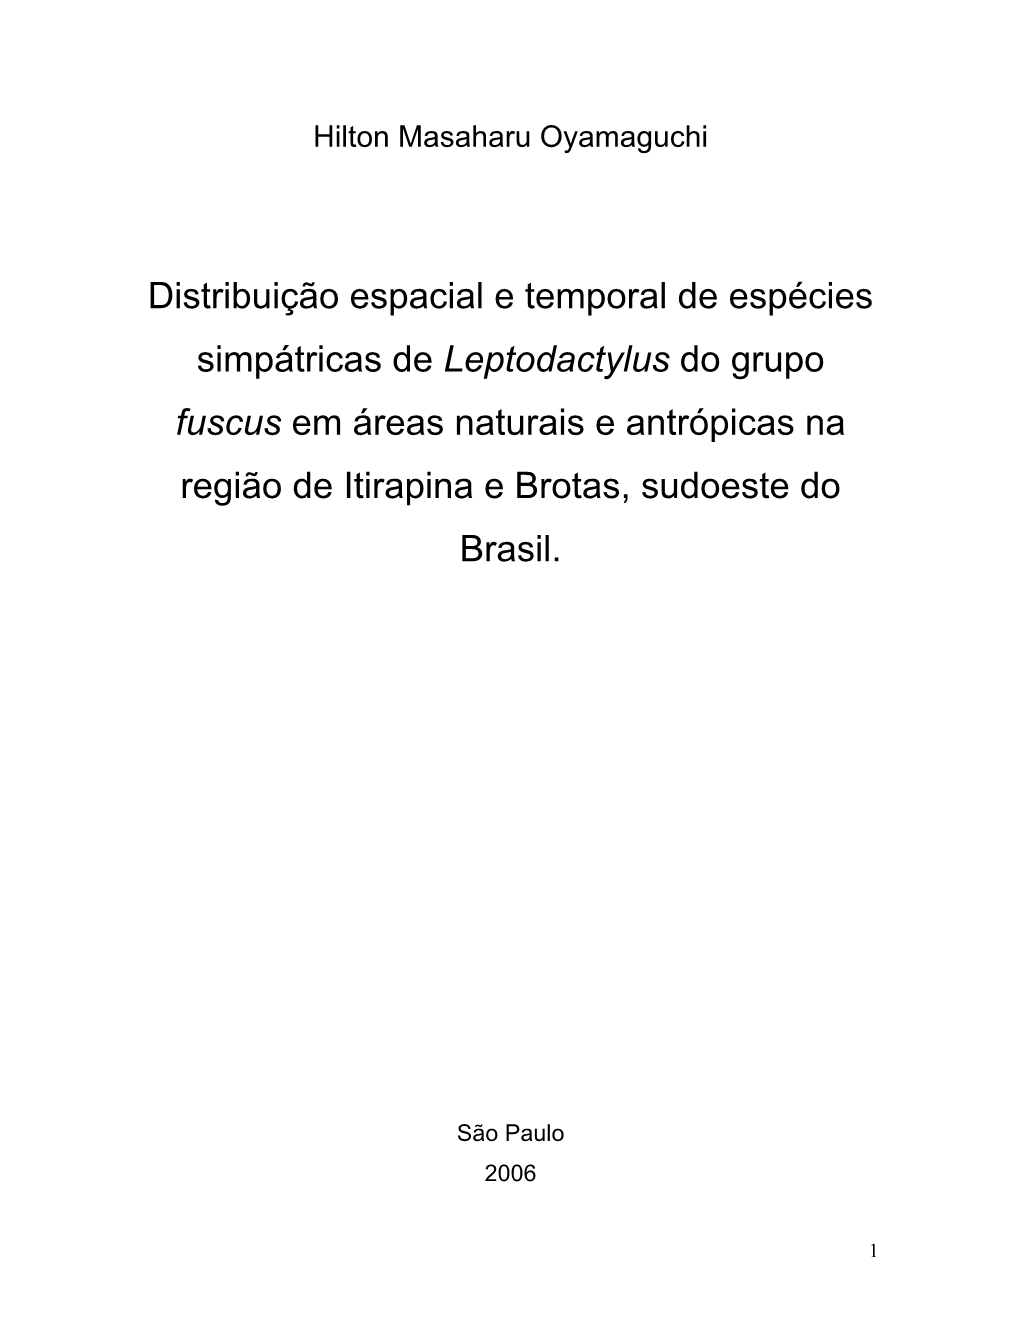 Leptodactylus Do Grupo Fuscus Em Áreas Naturais E Antrópicas Na Região De Itirapina E Brotas, Sudoeste Do Brasil